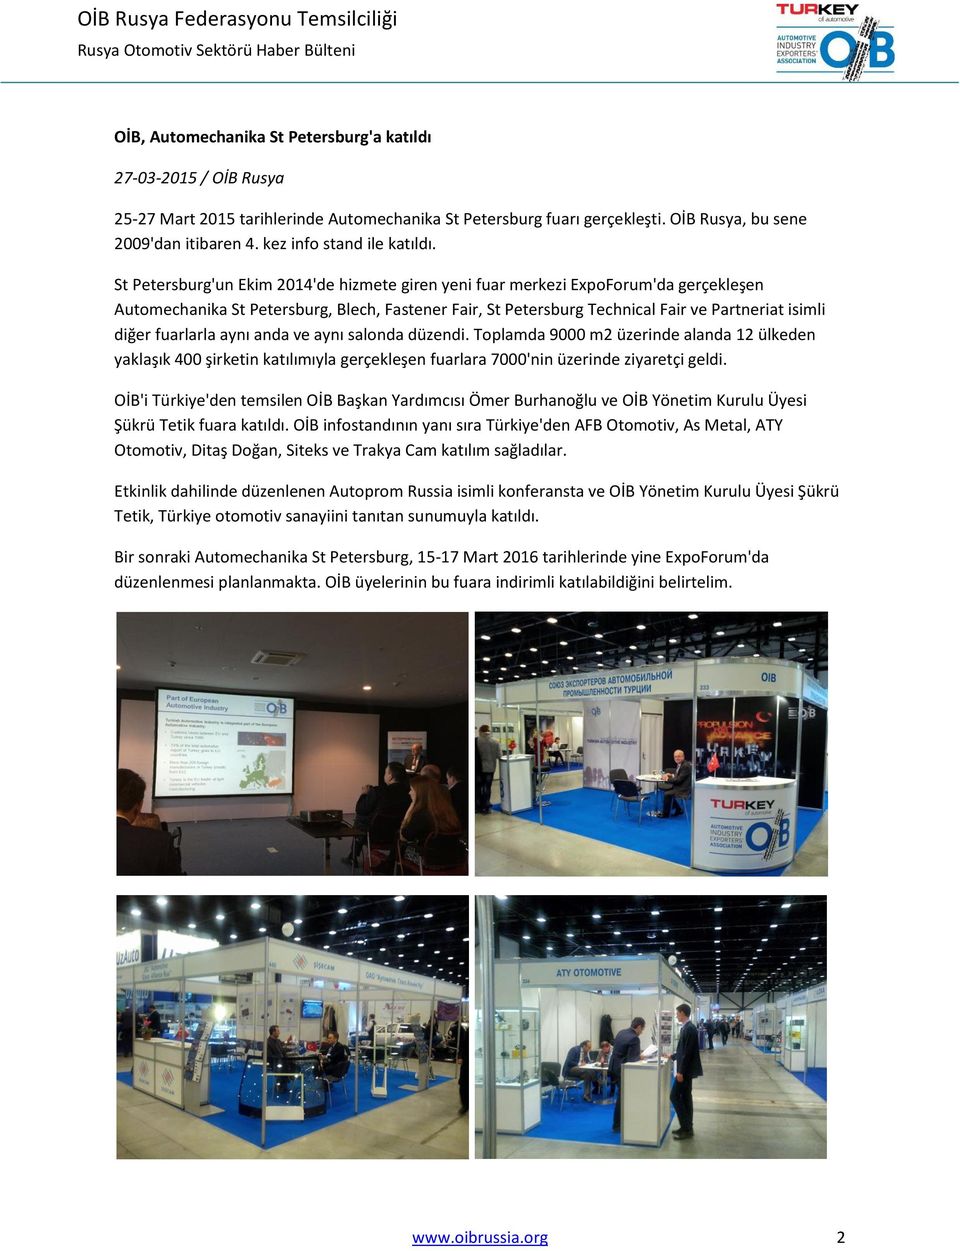 St Petersburg'un Ekim 2014'de hizmete giren yeni fuar merkezi ExpoForum'da gerçekleşen Automechanika St Petersburg, Blech, Fastener Fair, St Petersburg Technical Fair ve Partneriat isimli diğer